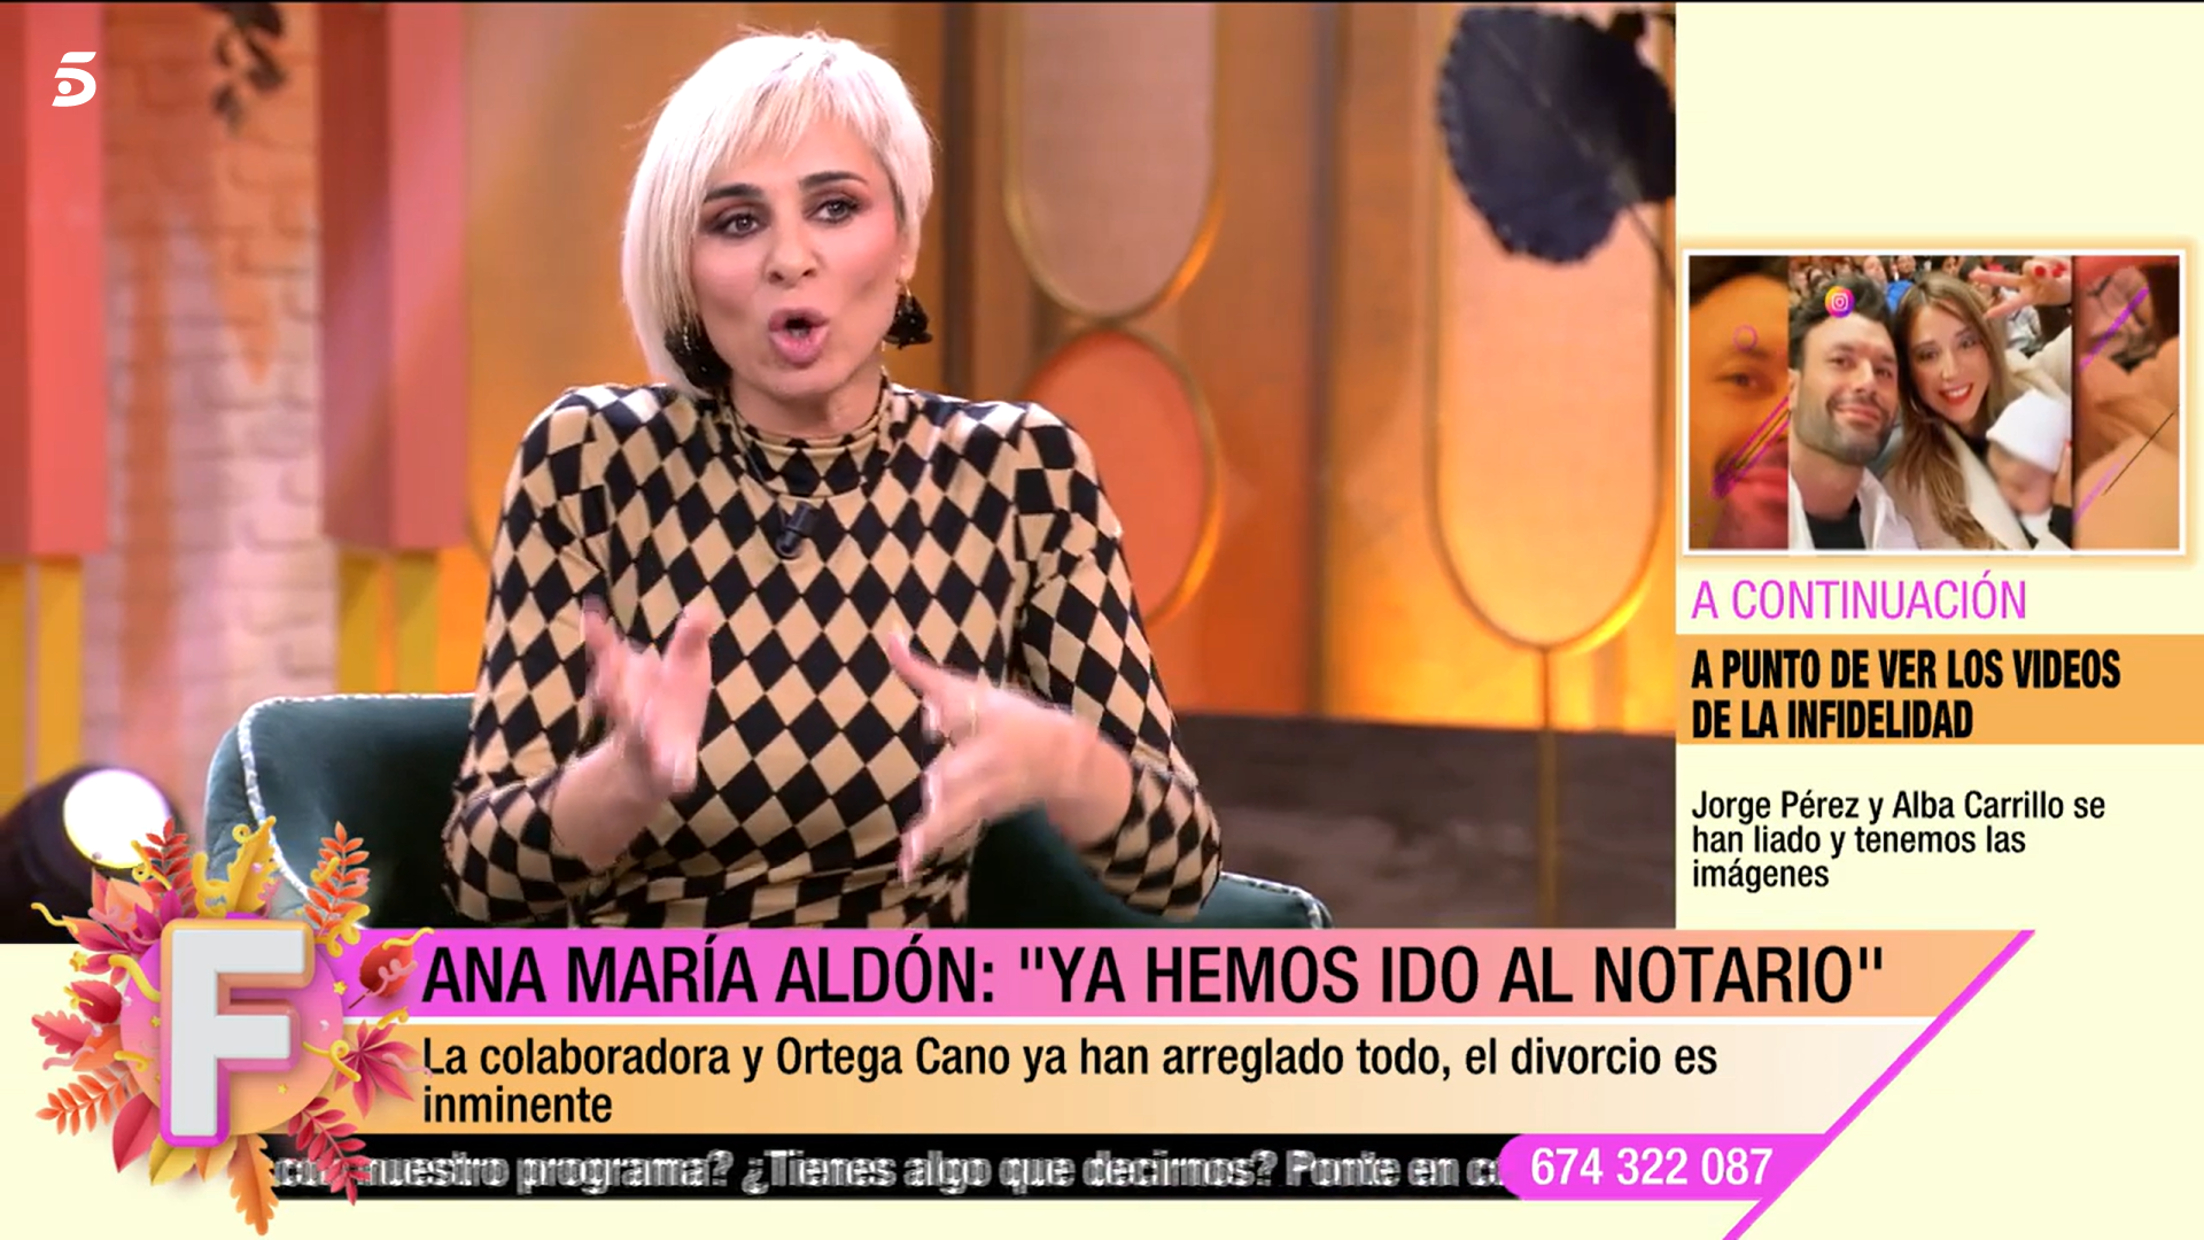 Ana María Aldón ha confirmado que ella y Ortega Cano ya han firmado el acuerdo de divorcio.